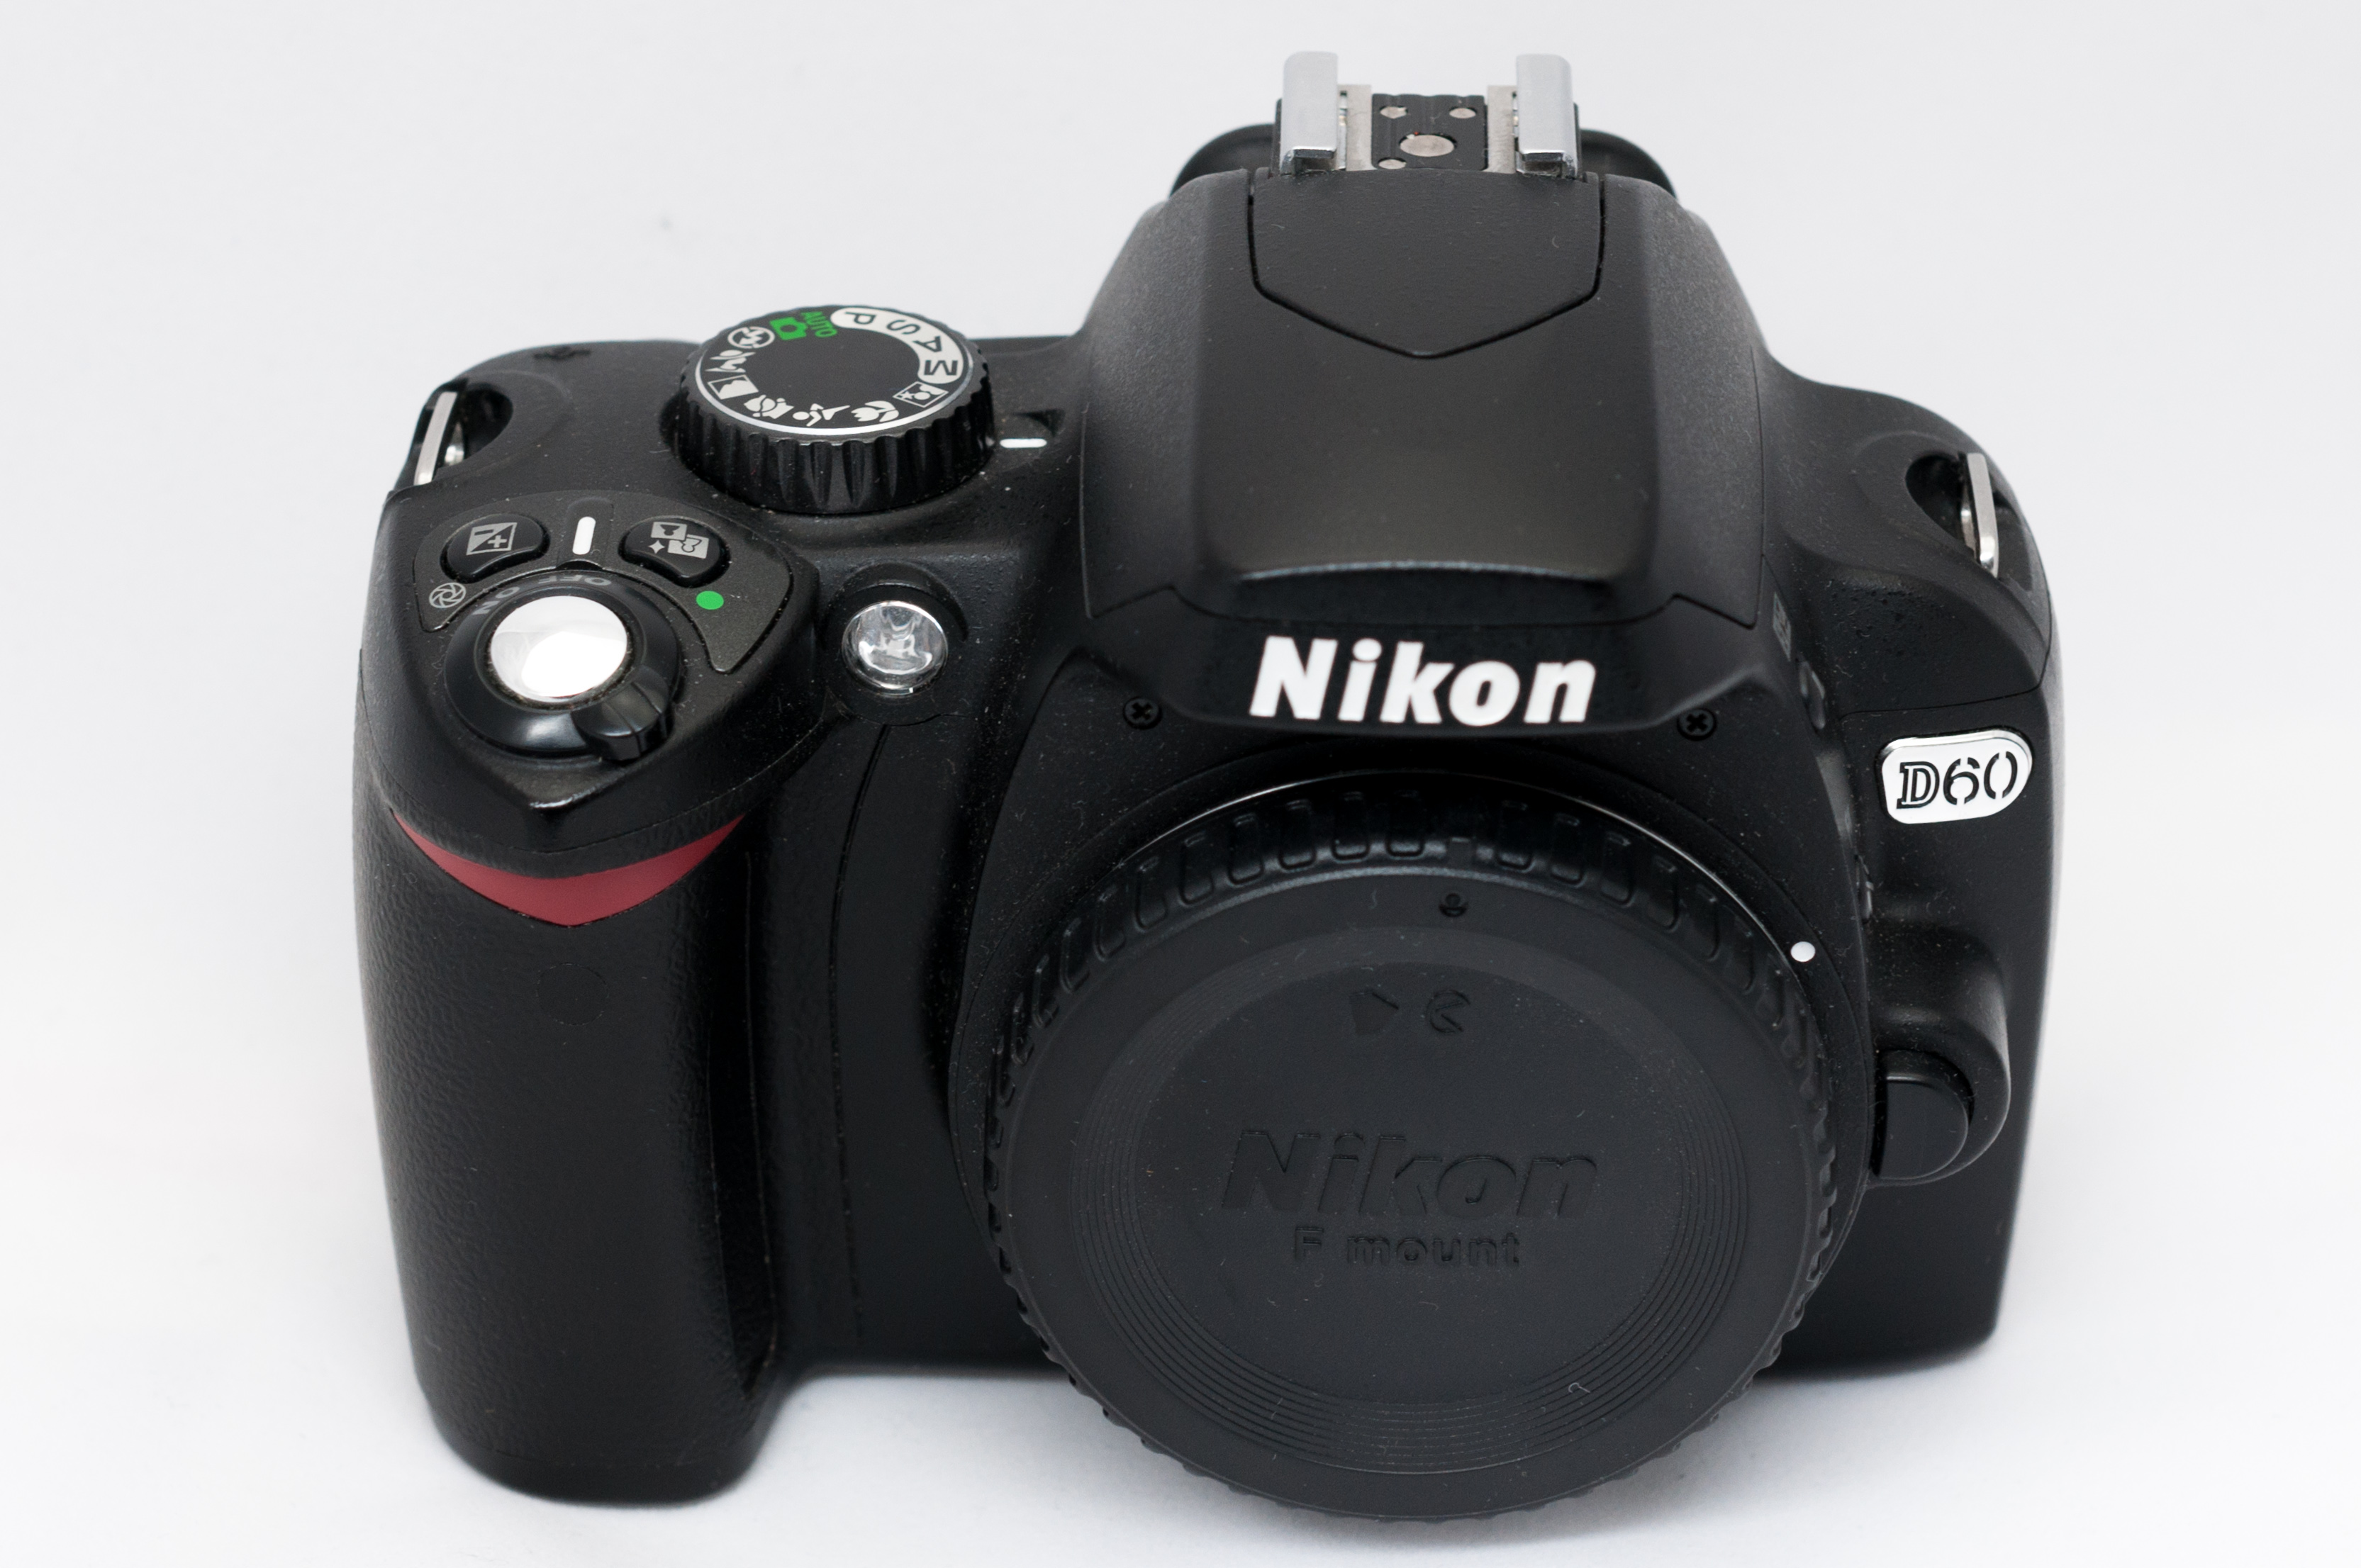 Nikon D90 Field Guide Free